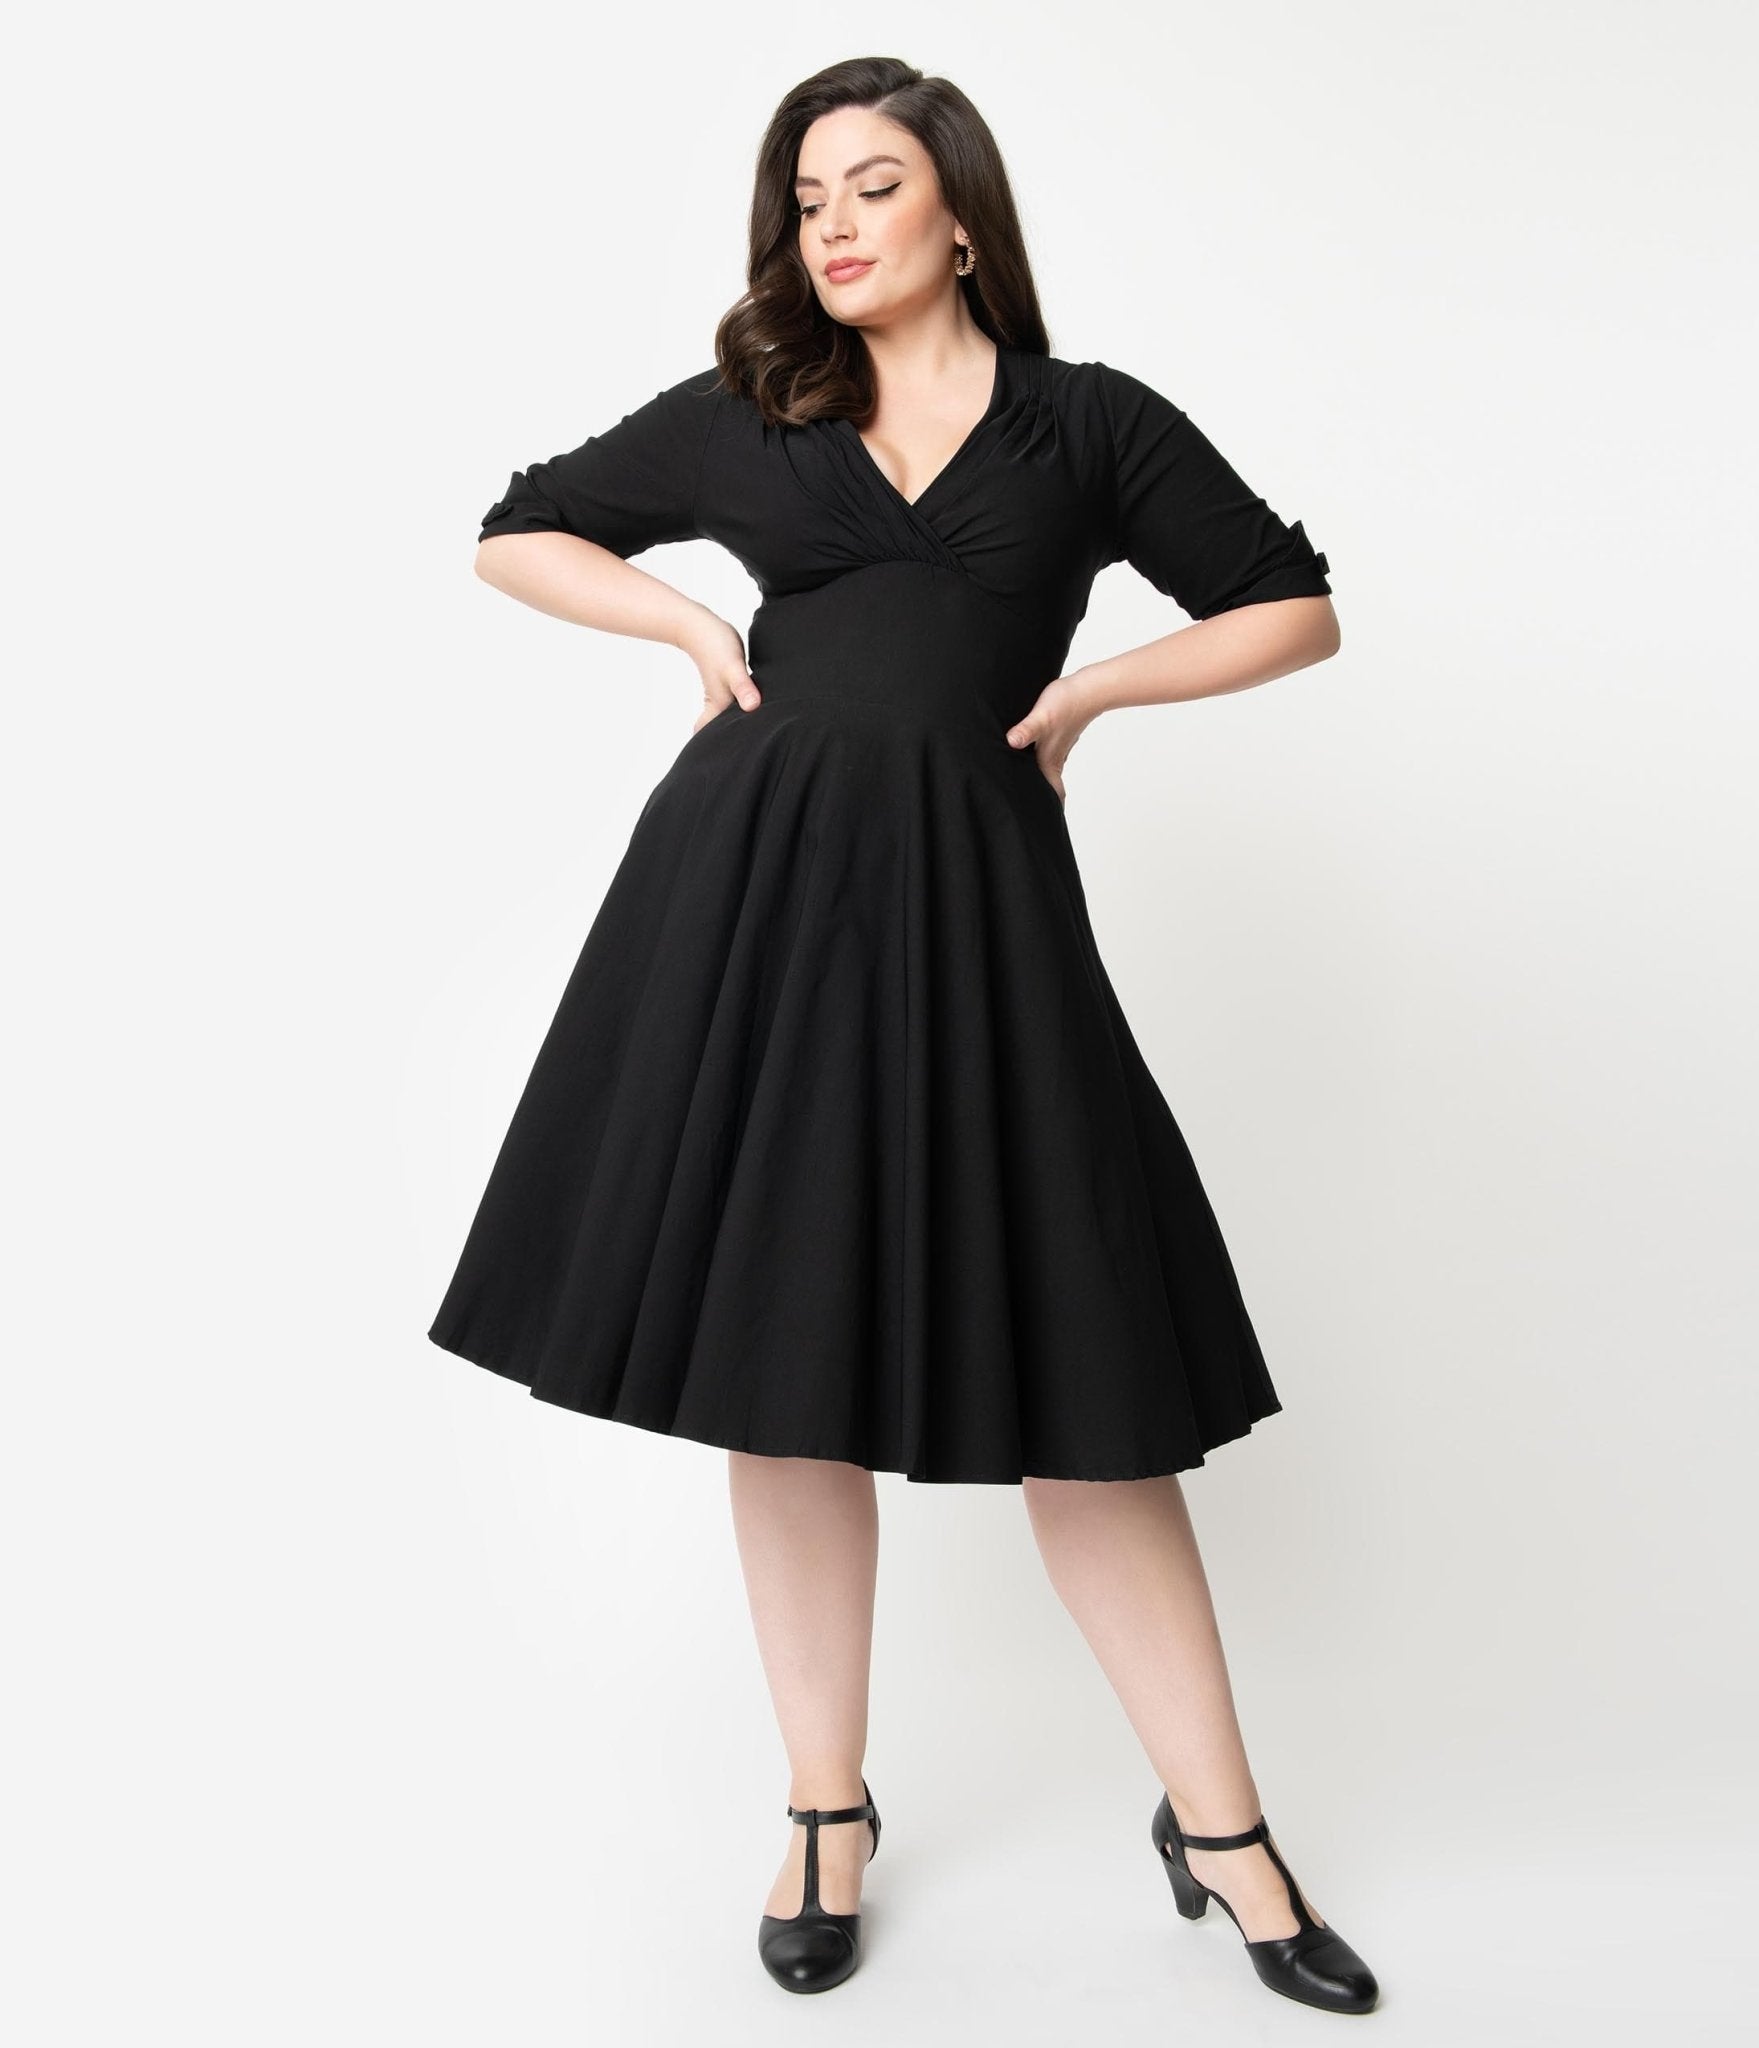 Unique Vintage Plus Size Black Delores Swing Dress with Sleeves - Unique Vintage - Womens, DRESSES, SWING